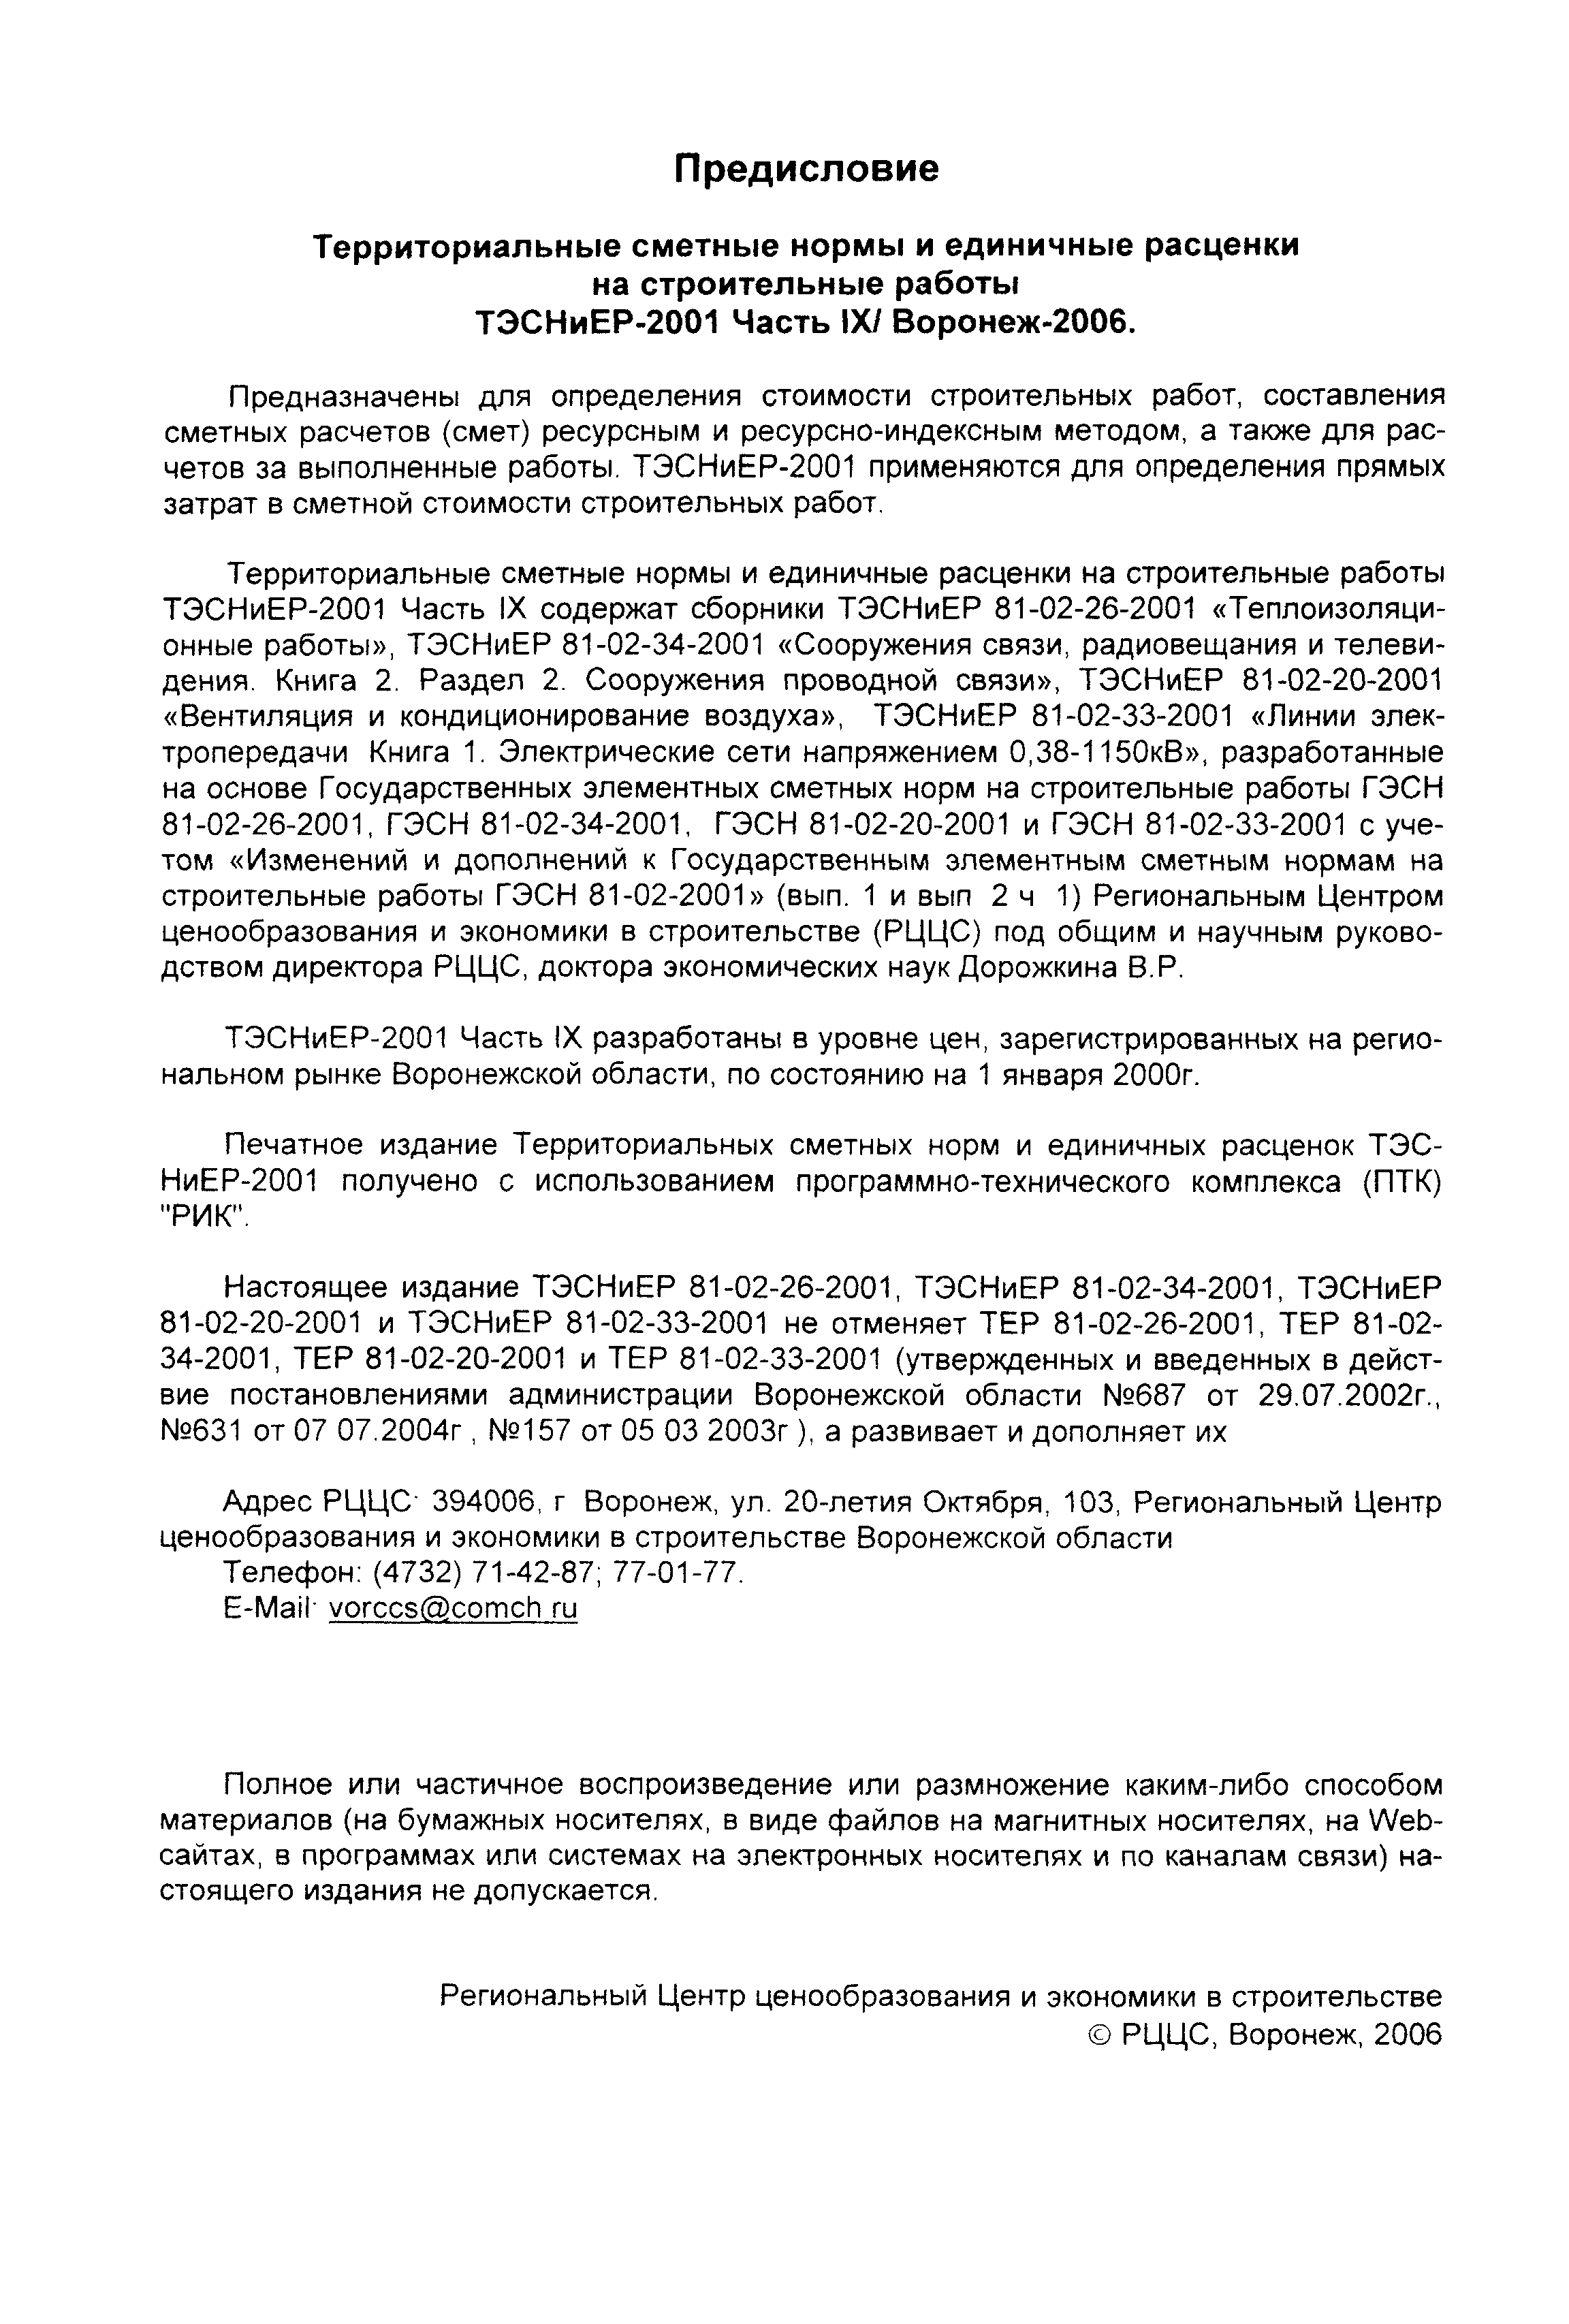 ТЭСНиЕР Воронежская область 81-02-20-2001